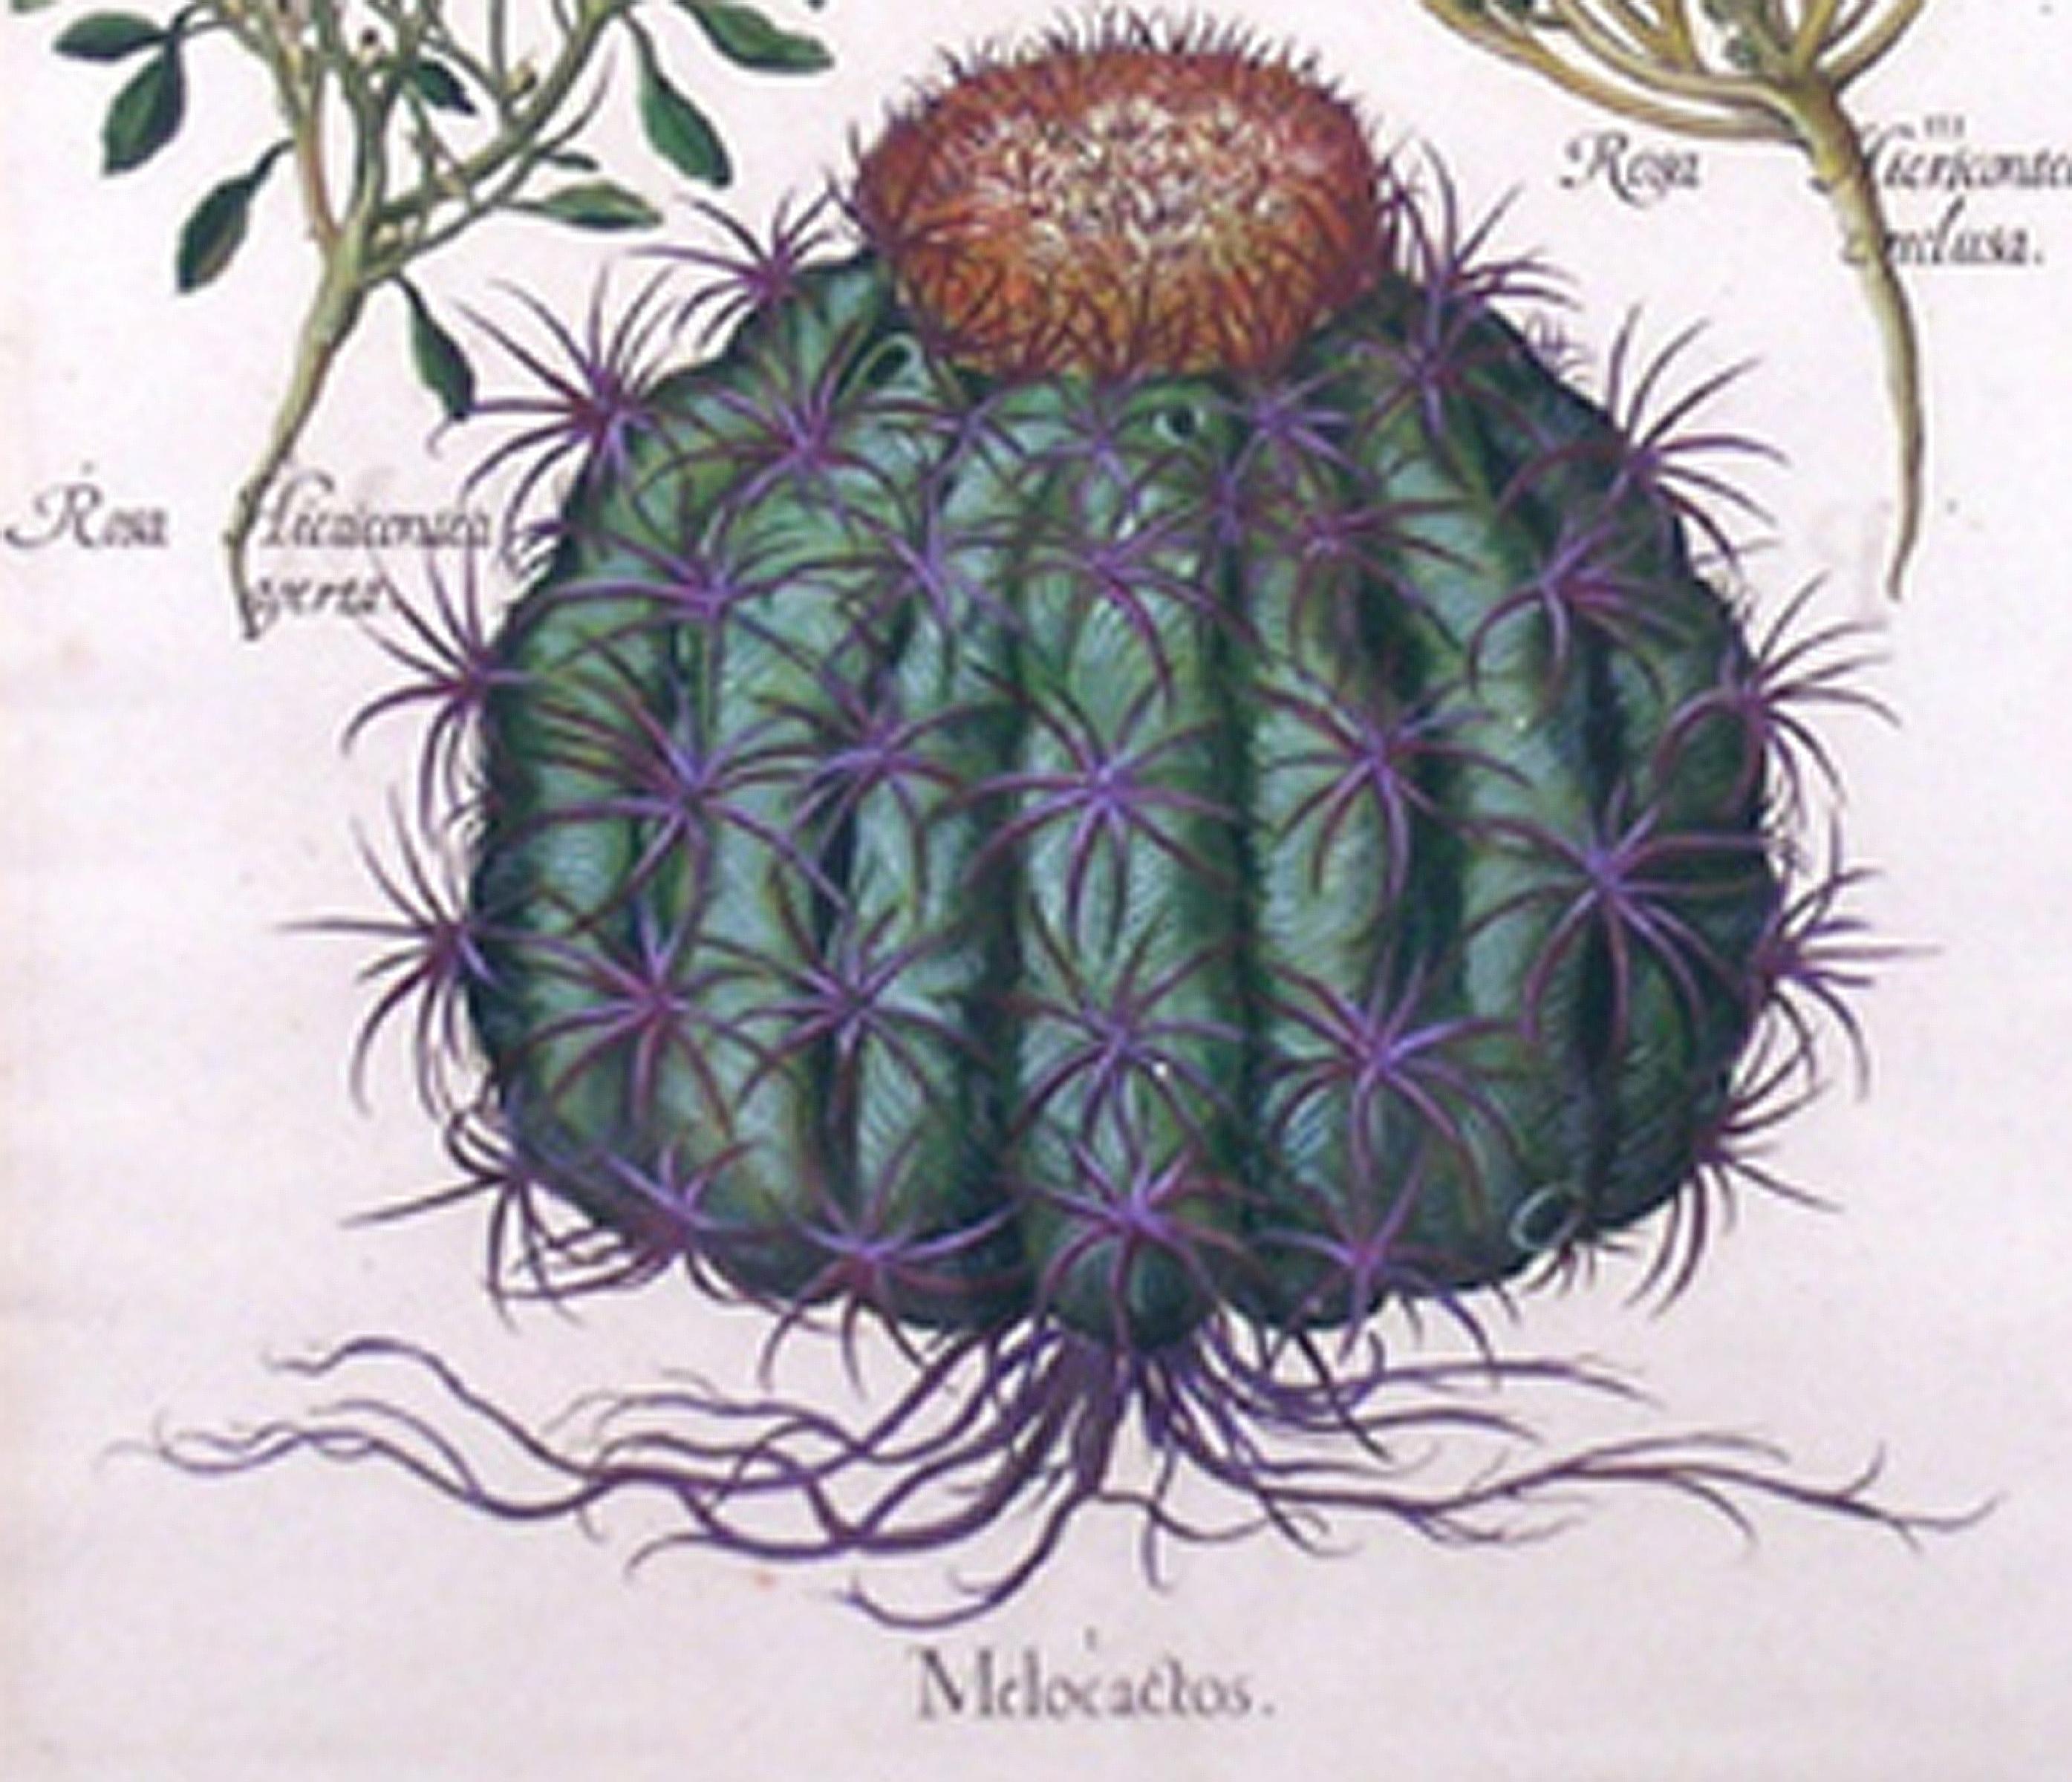 Melocactos Melocactus (Cactus) - Academic Print by Basilius Besler